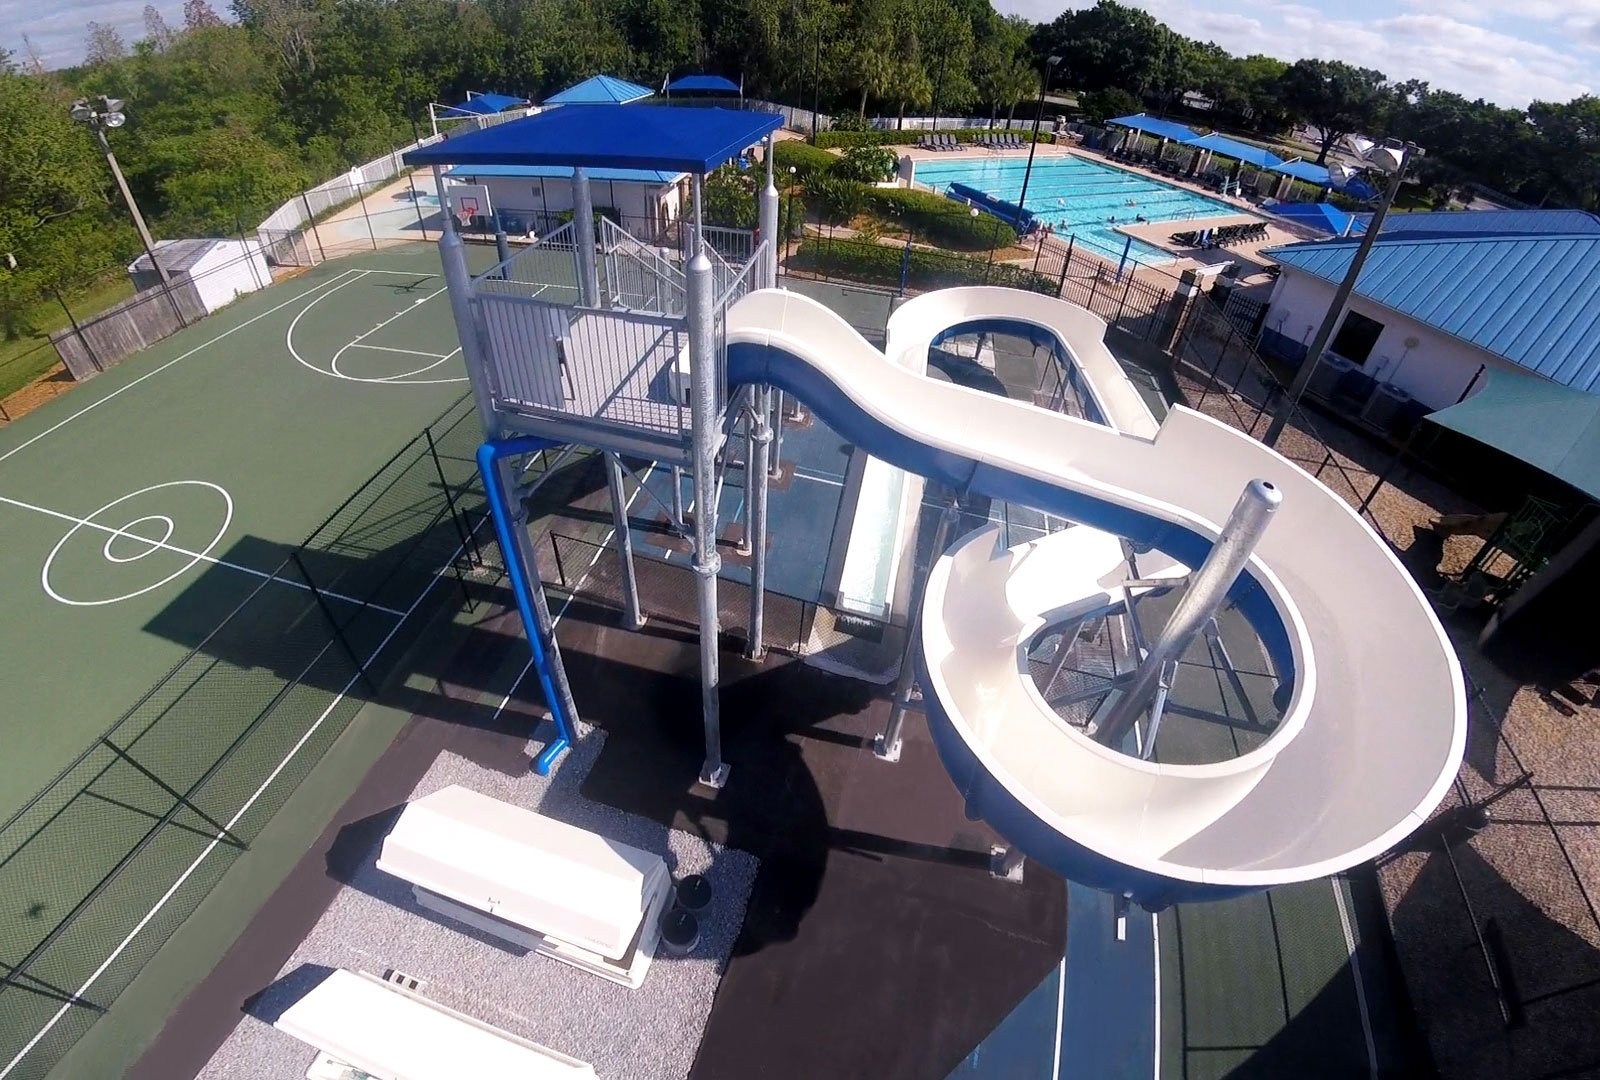 water slide installed on tennis court